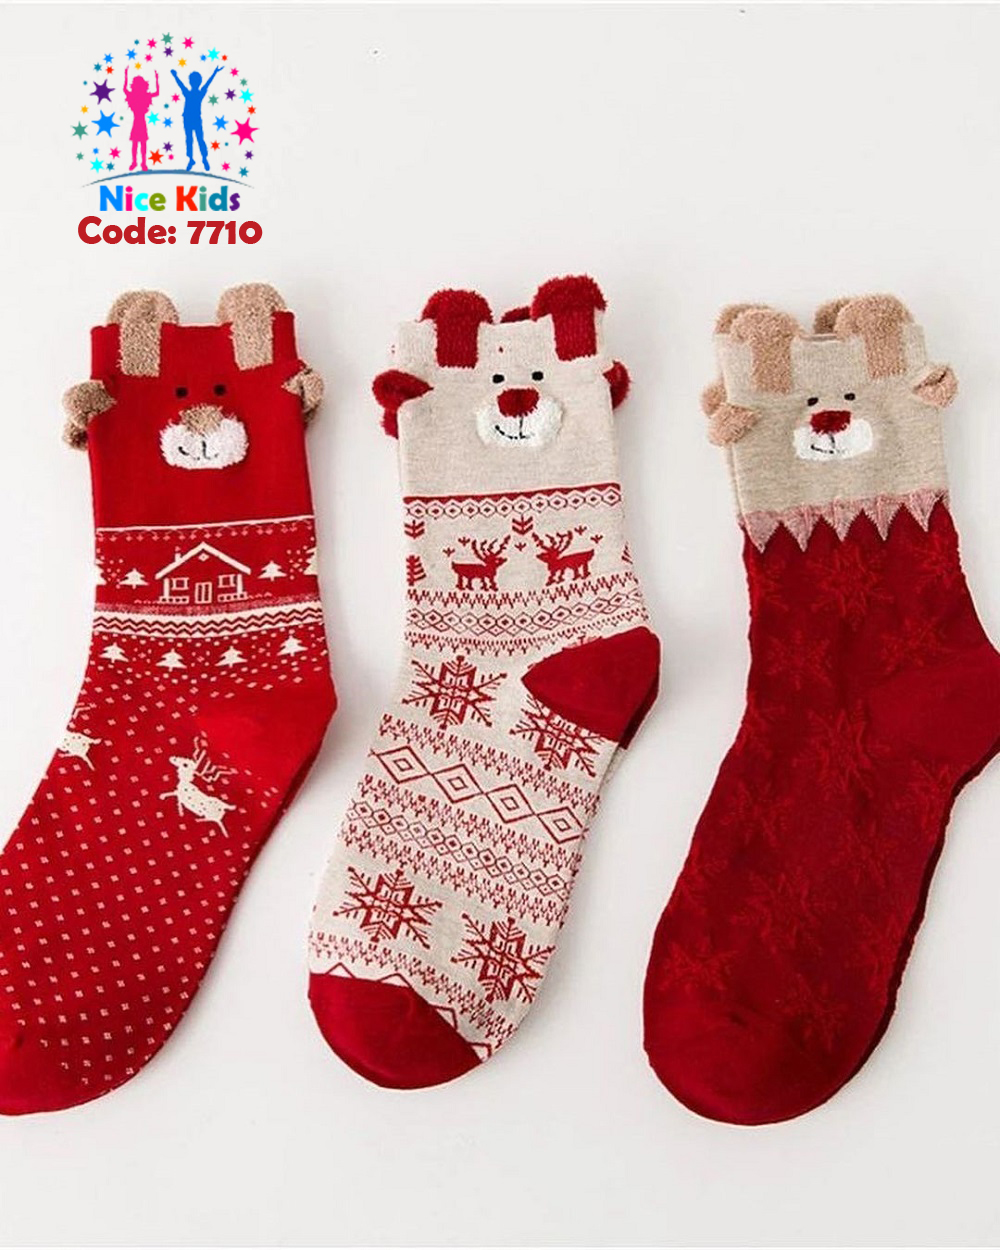 تصویر شماره 1 مربوط به جورابهای نیم ساق کریسمسی و یلدایی با کد 7710